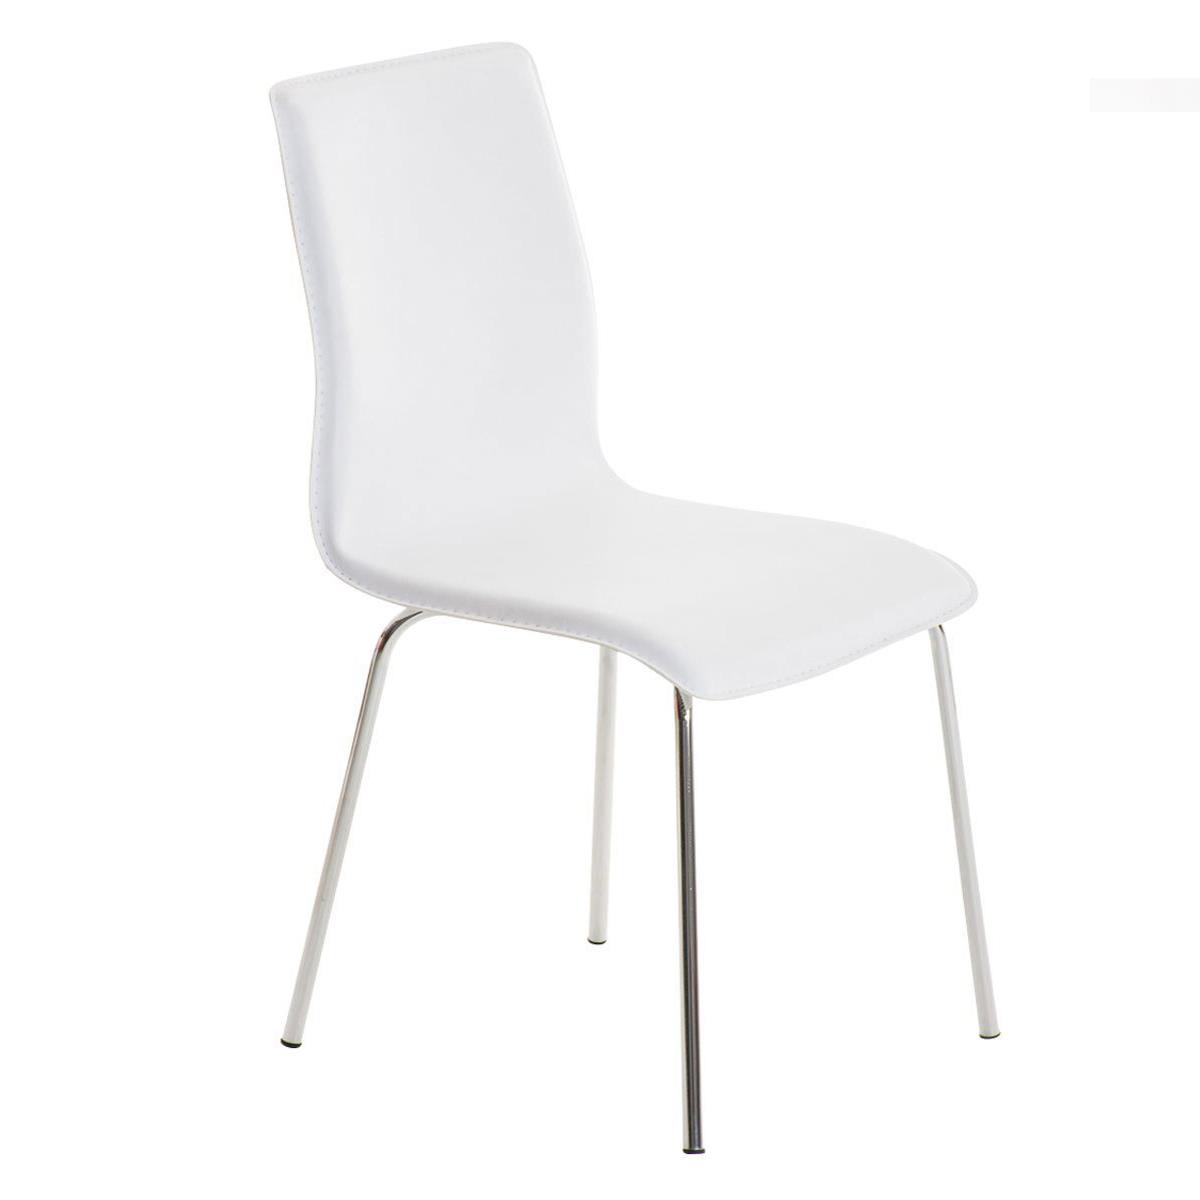 Cadeira de Visita MIKI, Design Exclusivo, Forrada Em Pele, Cor Branco